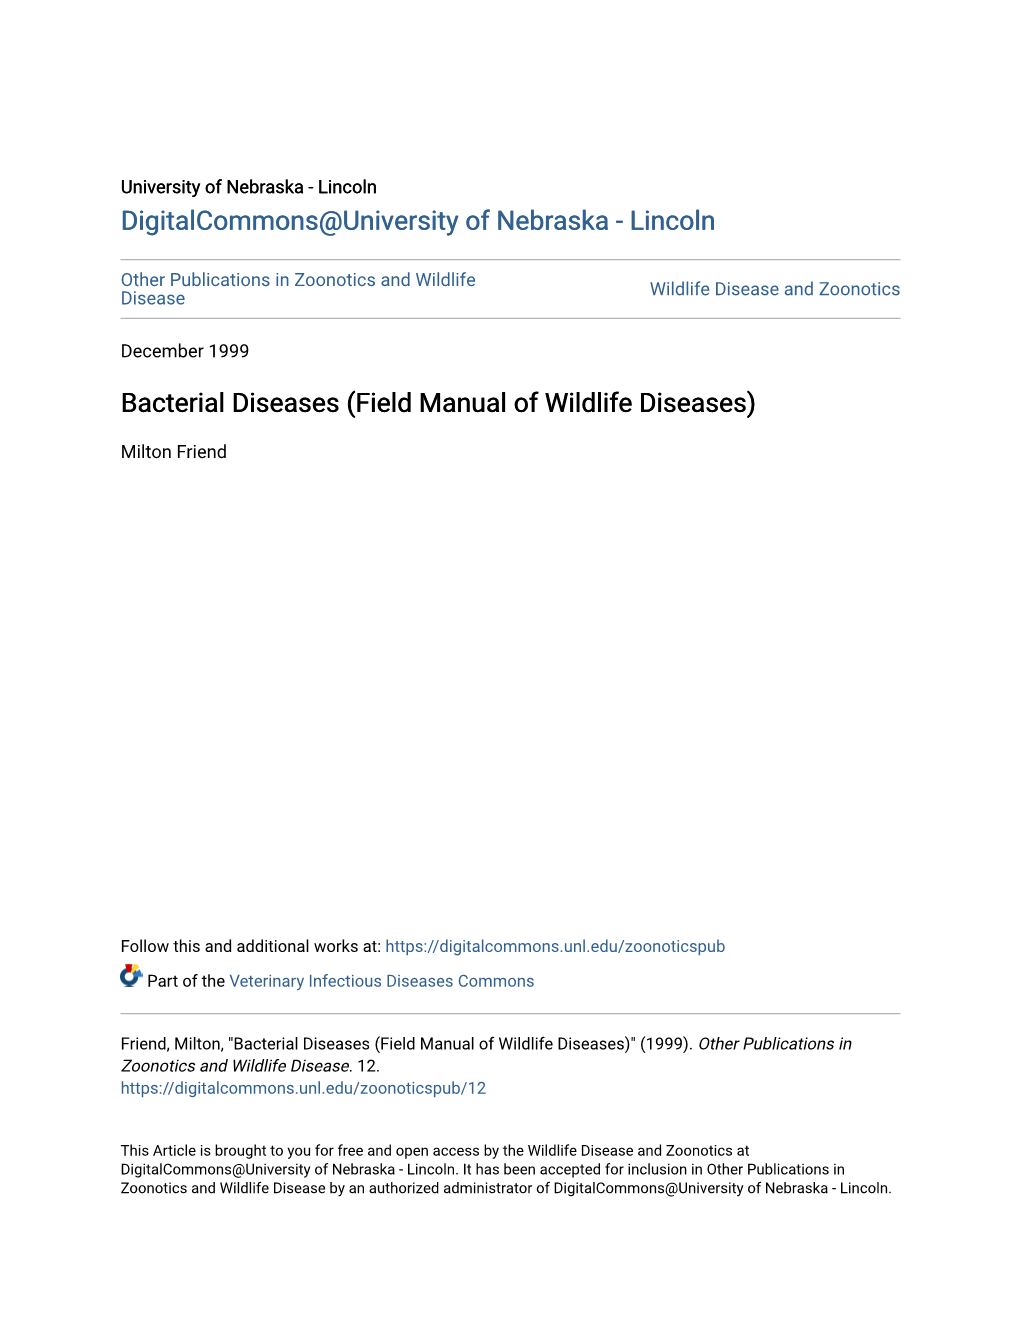 Bacterial Diseases (Field Manual of Wildlife Diseases)